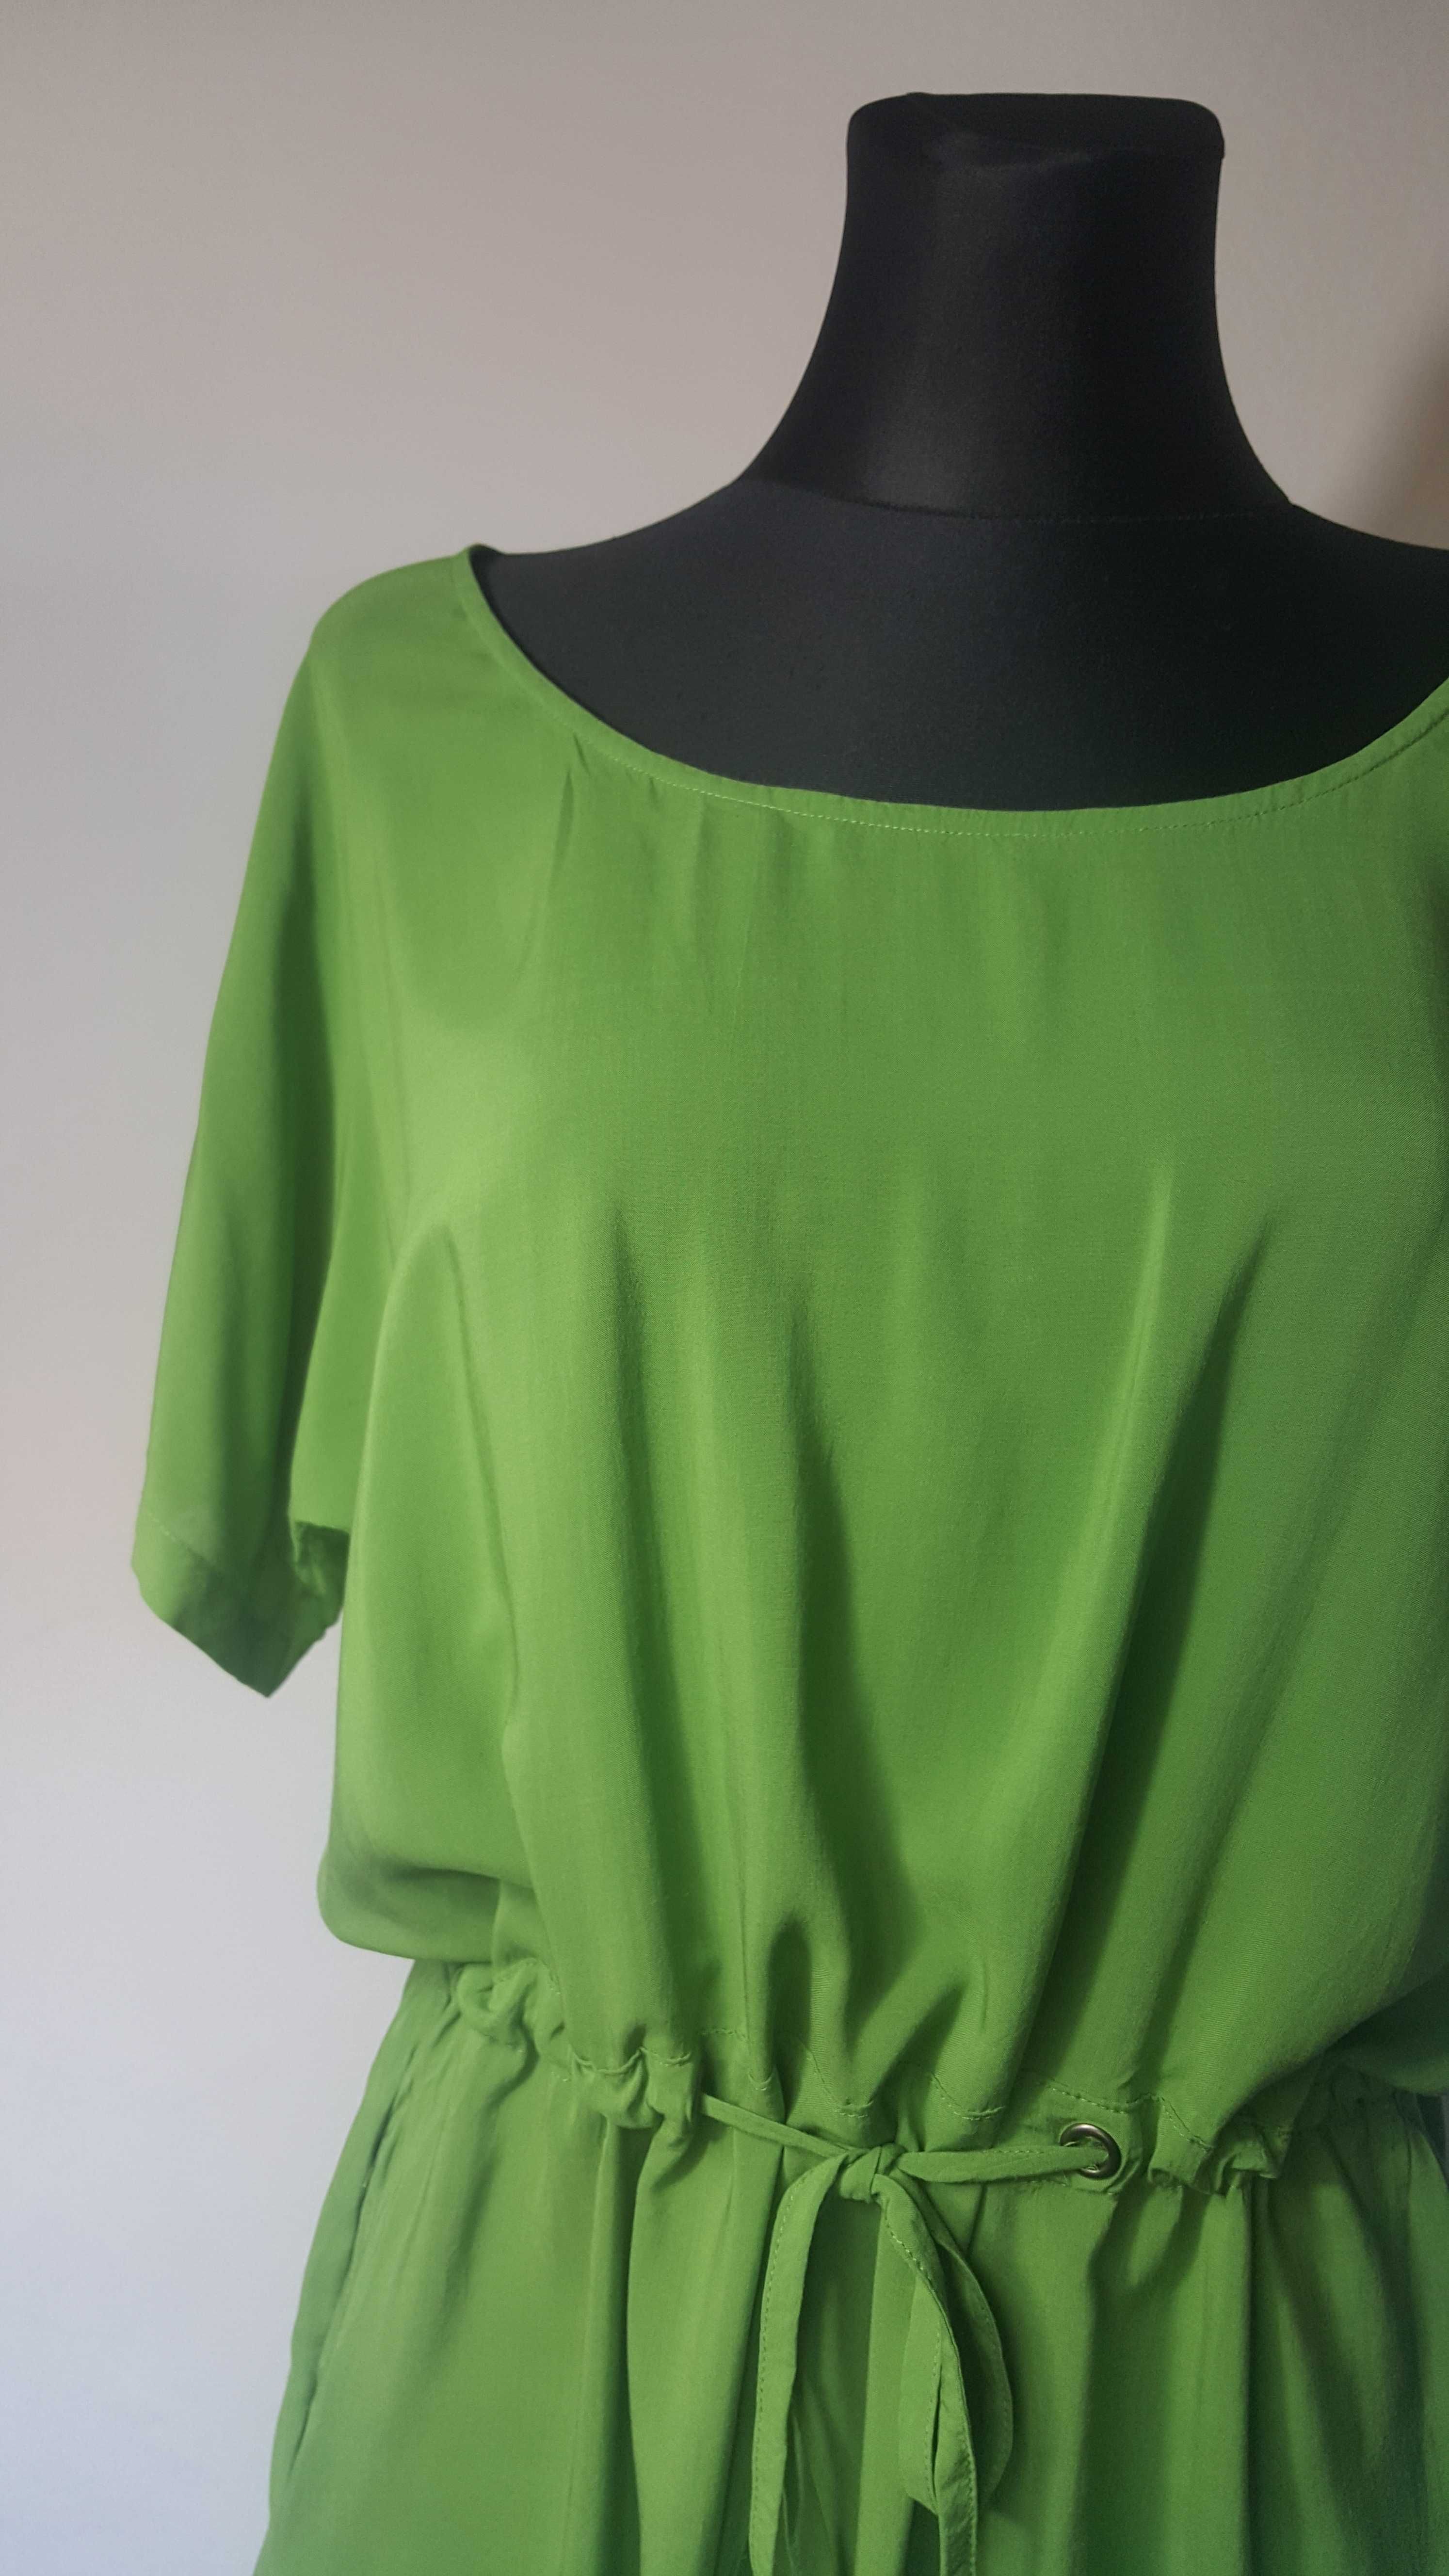 CARRY Zielona sukienka Tunika Basic Nietoperz Okrągły dekolt 36